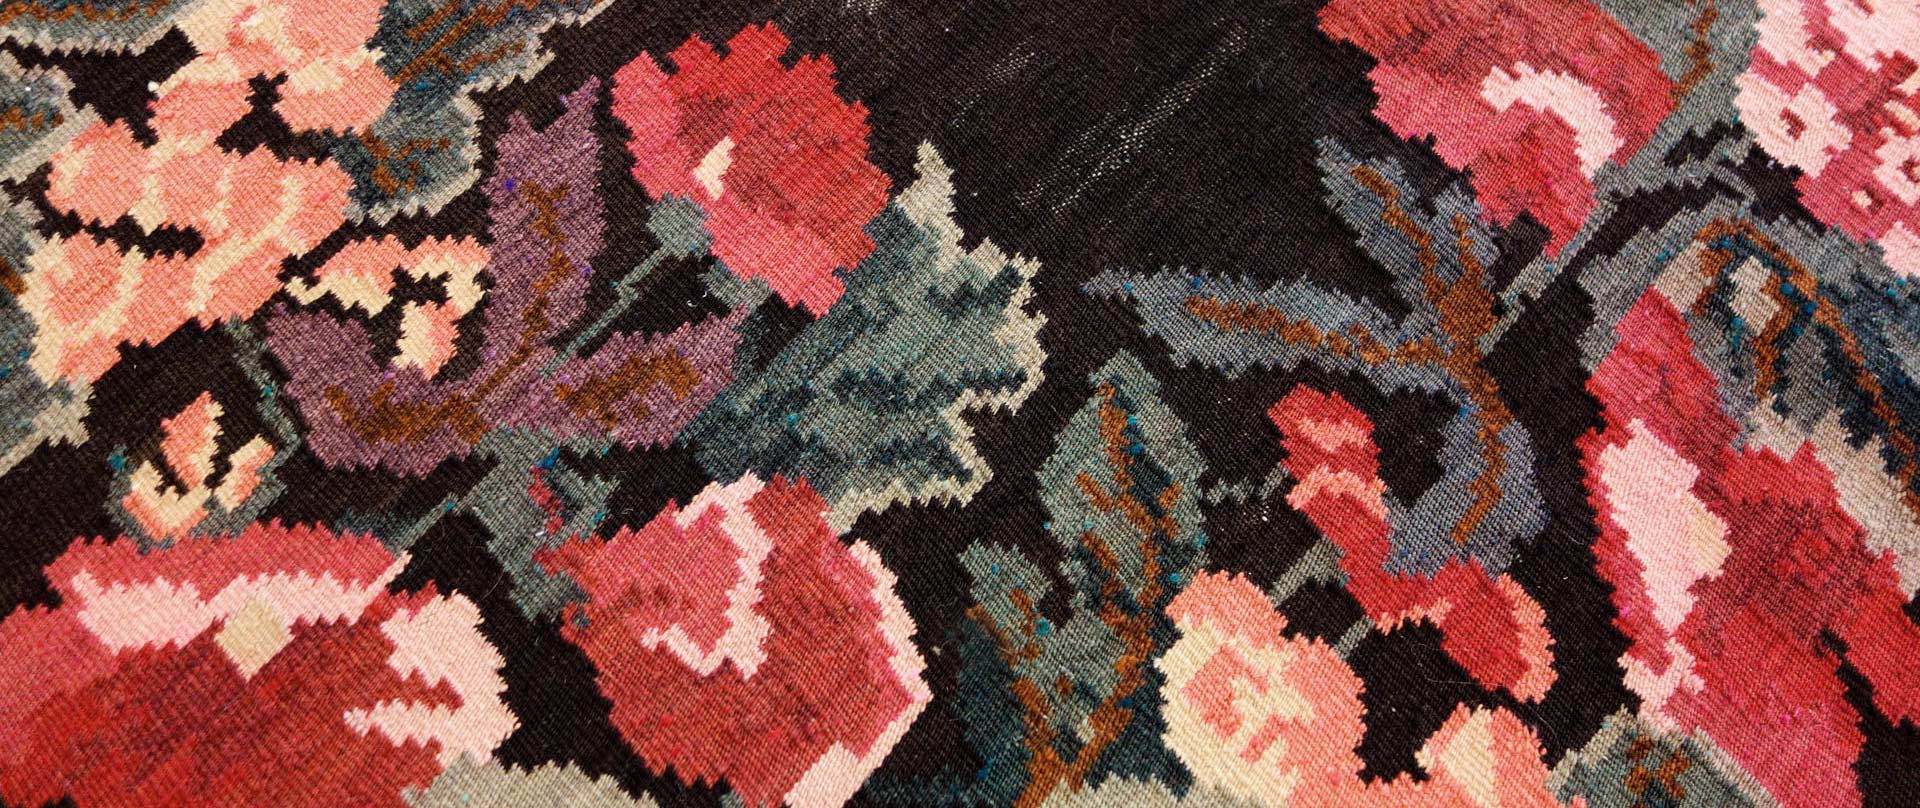 Detailaufnahme eines gemusterten Teppichs mit floralen Motiven in verschiedenen Farben, hauptsächlich in Tönen von Rosa, Blau und Schwarz.